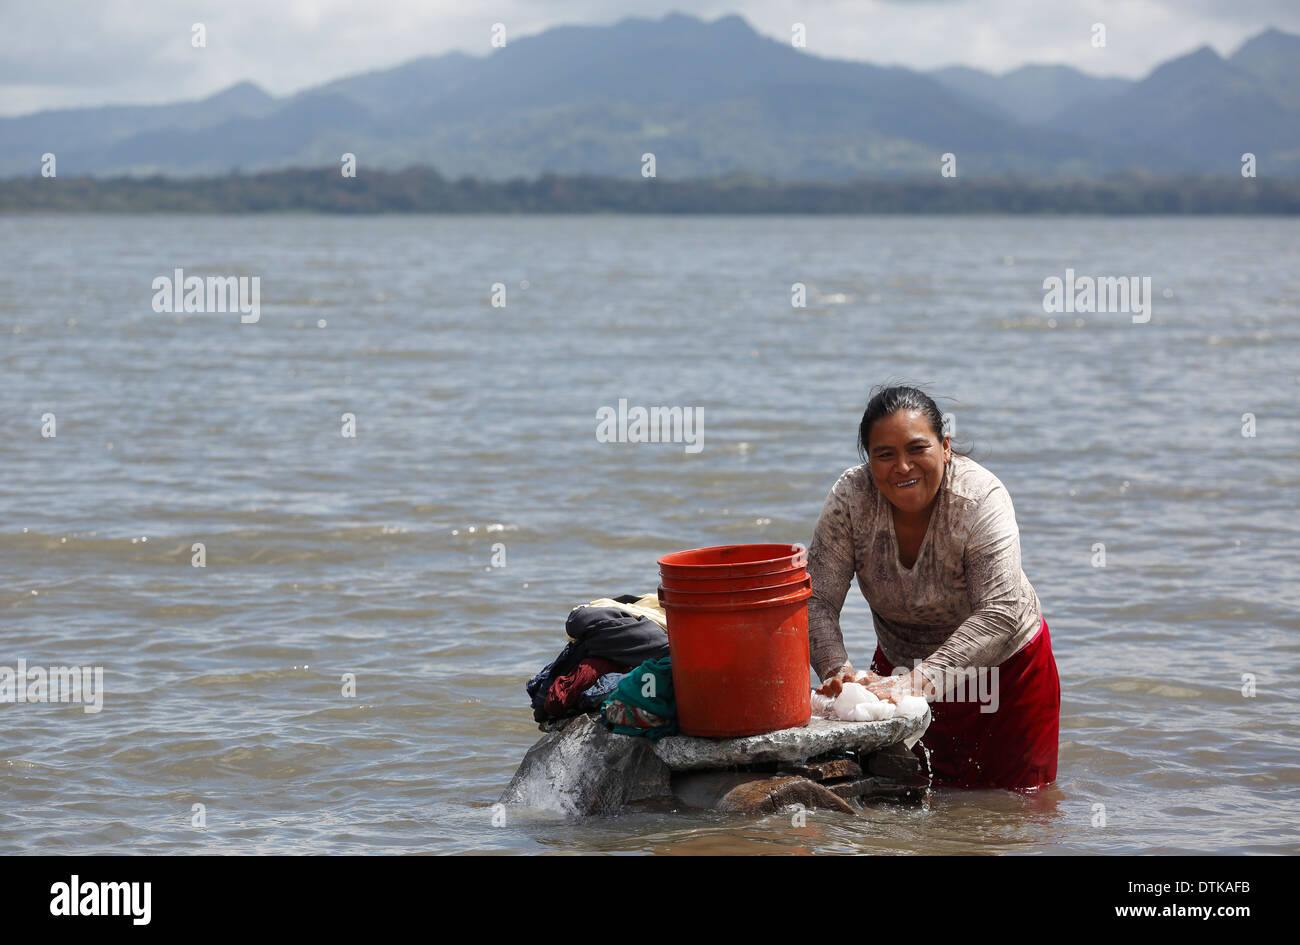 Blanchisserie, lavage des mains femme Lago de Apanas, Nicaragua Banque D'Images